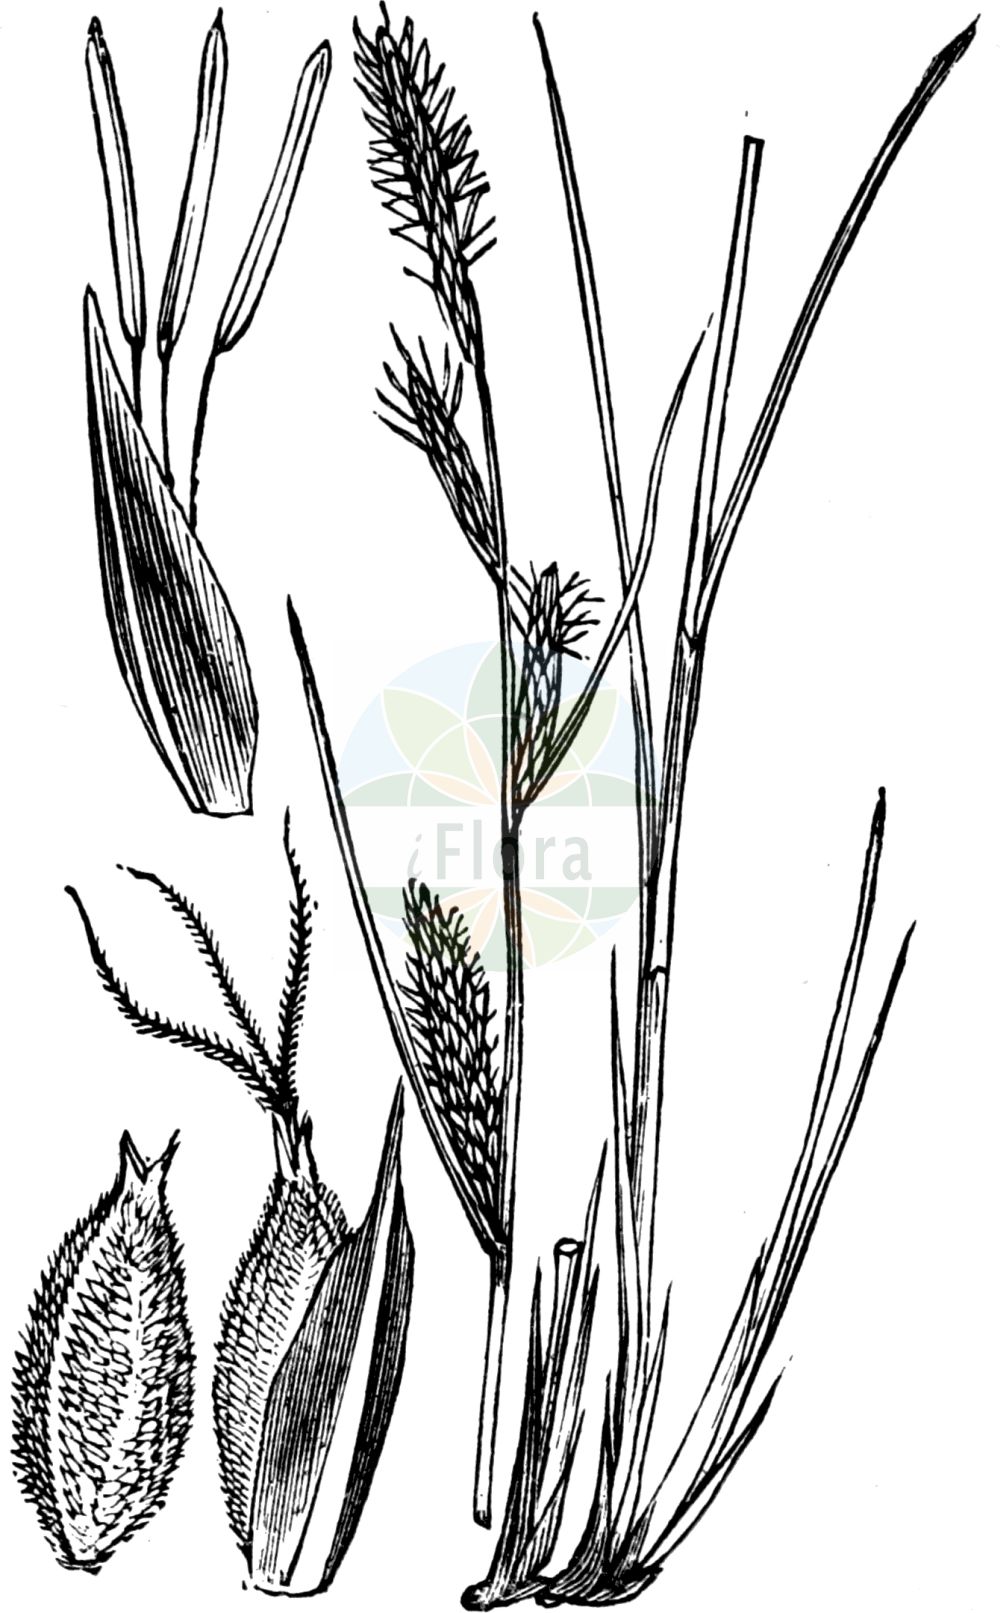 Historische Abbildung von Carex lasiocarpa (Faden-Segge - Slender Sedge). Das Bild zeigt Blatt, Bluete, Frucht und Same. ---- Historical Drawing of Carex lasiocarpa (Faden-Segge - Slender Sedge). The image is showing leaf, flower, fruit and seed.(Carex lasiocarpa,Faden-Segge,Slender Sedge,Carex lasiocarpa,Faden-Segge,Slender Sedge,Slender-leaved Sedge,Woollyfruit Sedge,Wool-fruit Sedge,Carex,Segge,Sedge,Cyperaceae,Sauergräser,Sedge family,Blatt,Bluete,Frucht,Same,leaf,flower,fruit,seed,Fitch et al. (1880))